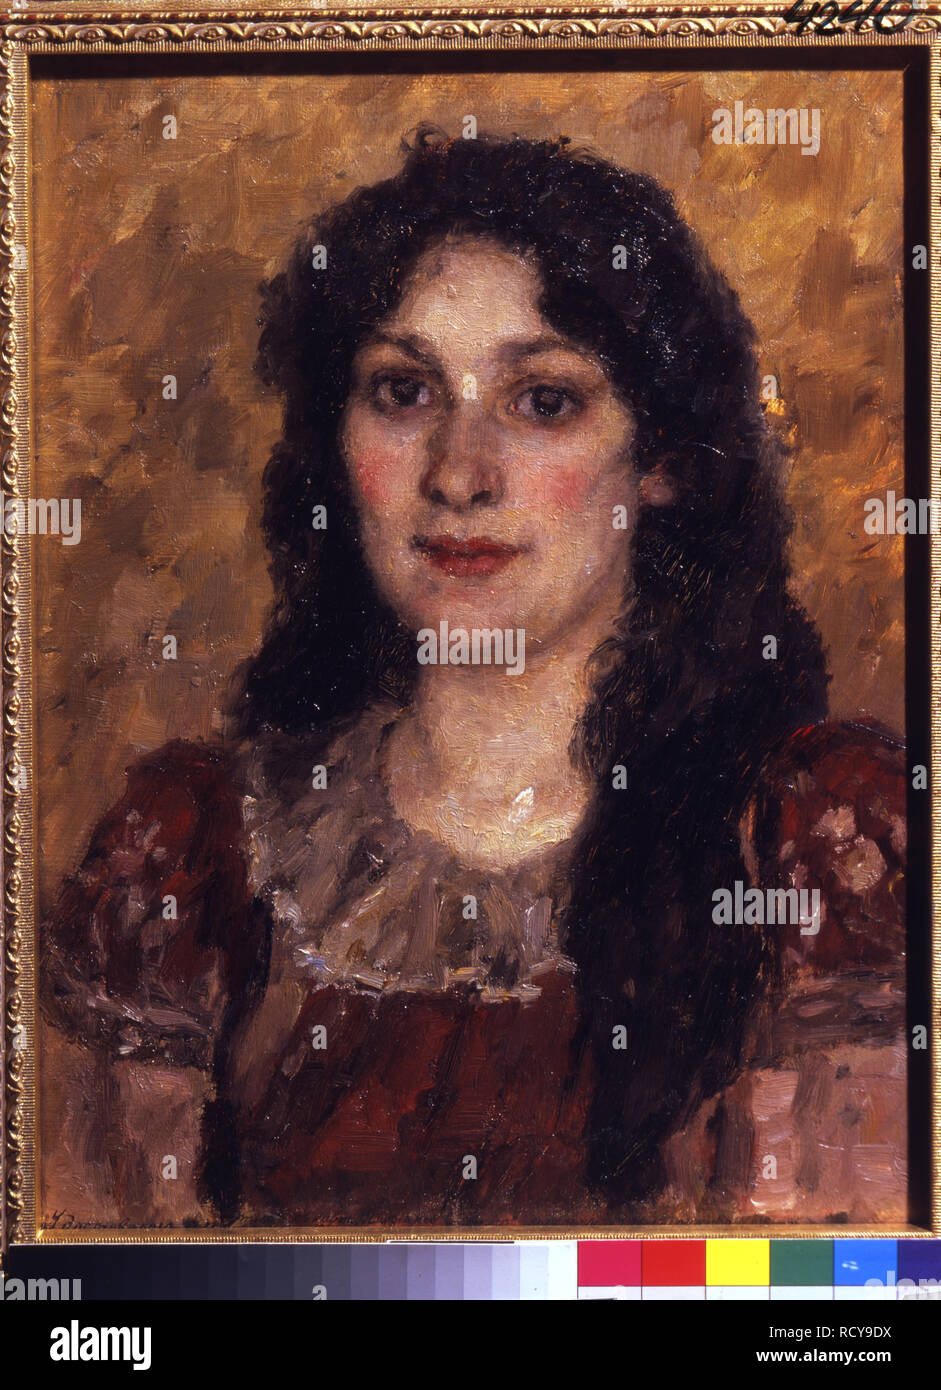 Ritratto dell'artista la moglie. Museo: cultura di Stato Foundation, Mosca. Autore: Surikov, Vassili Ivanovic. Foto Stock